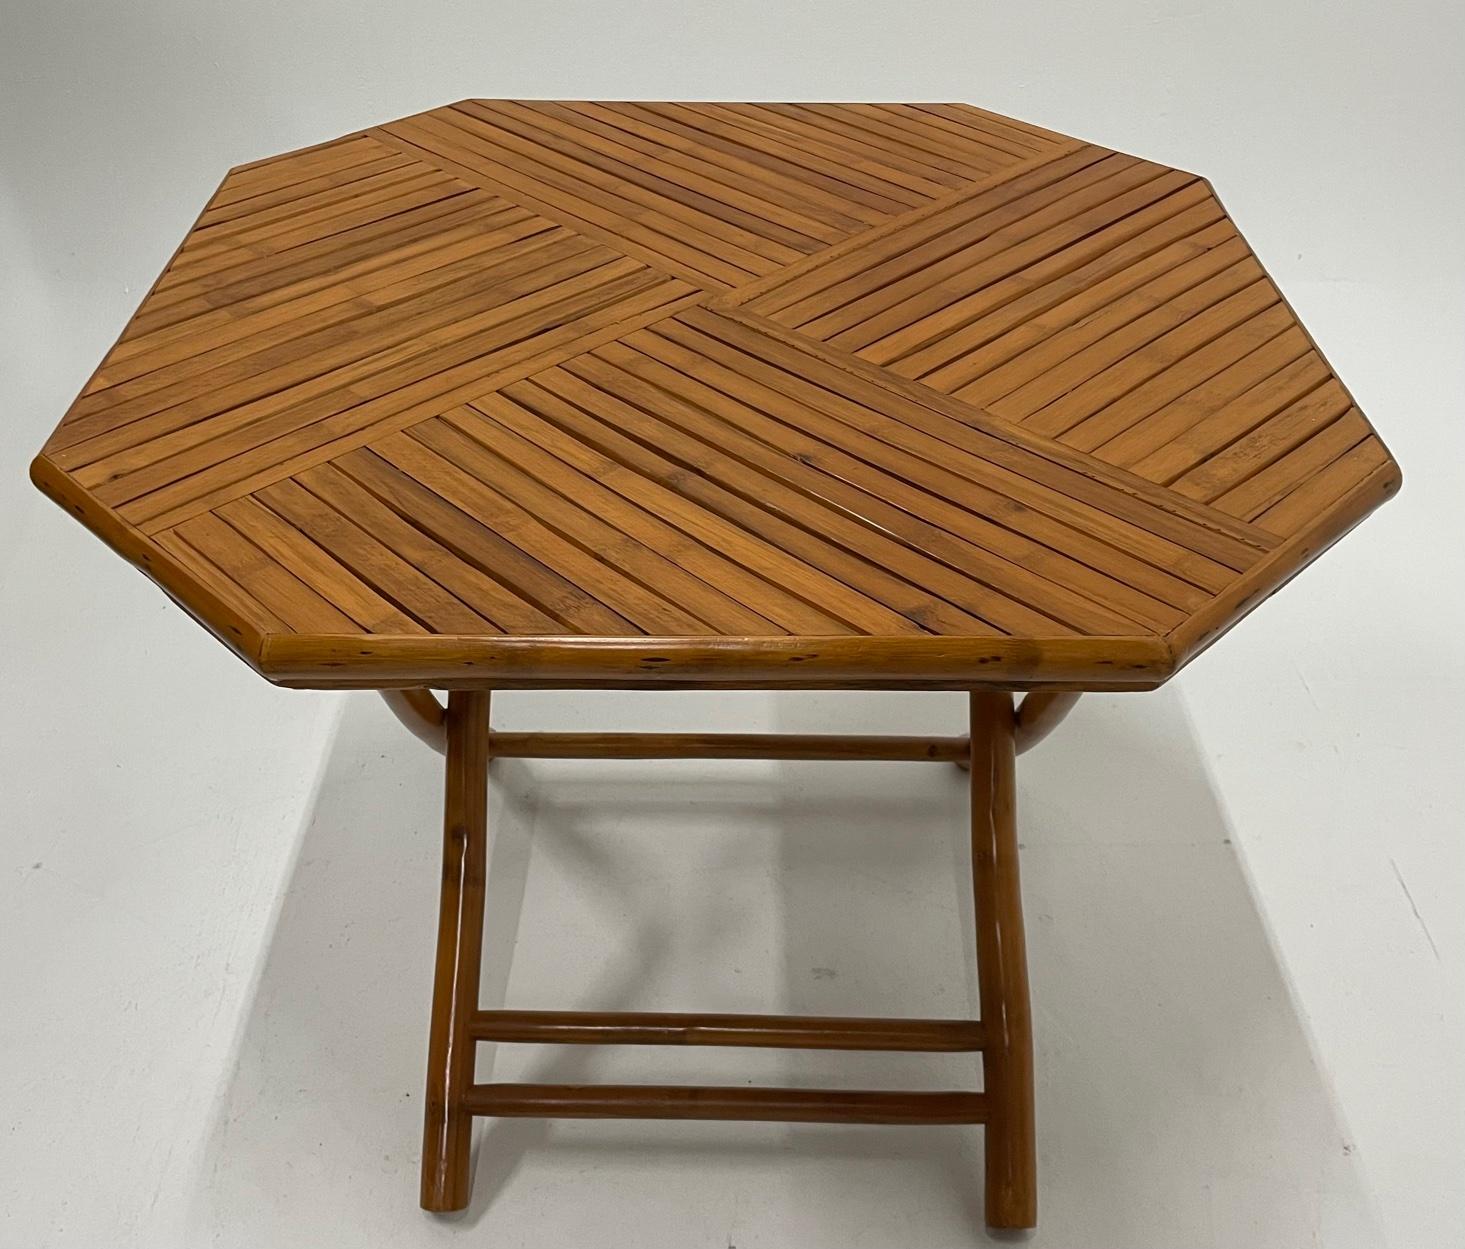 Ein schicker 8-seitiger Bambustisch mit klappbaren Beinen und einer schön gearbeiteten Platte mit dreieckigen Bambusabschnitten in geometrischem Design. Er eignet sich hervorragend als Mitteltisch oder Frühstückstisch. Großartige Form und Gestalt.